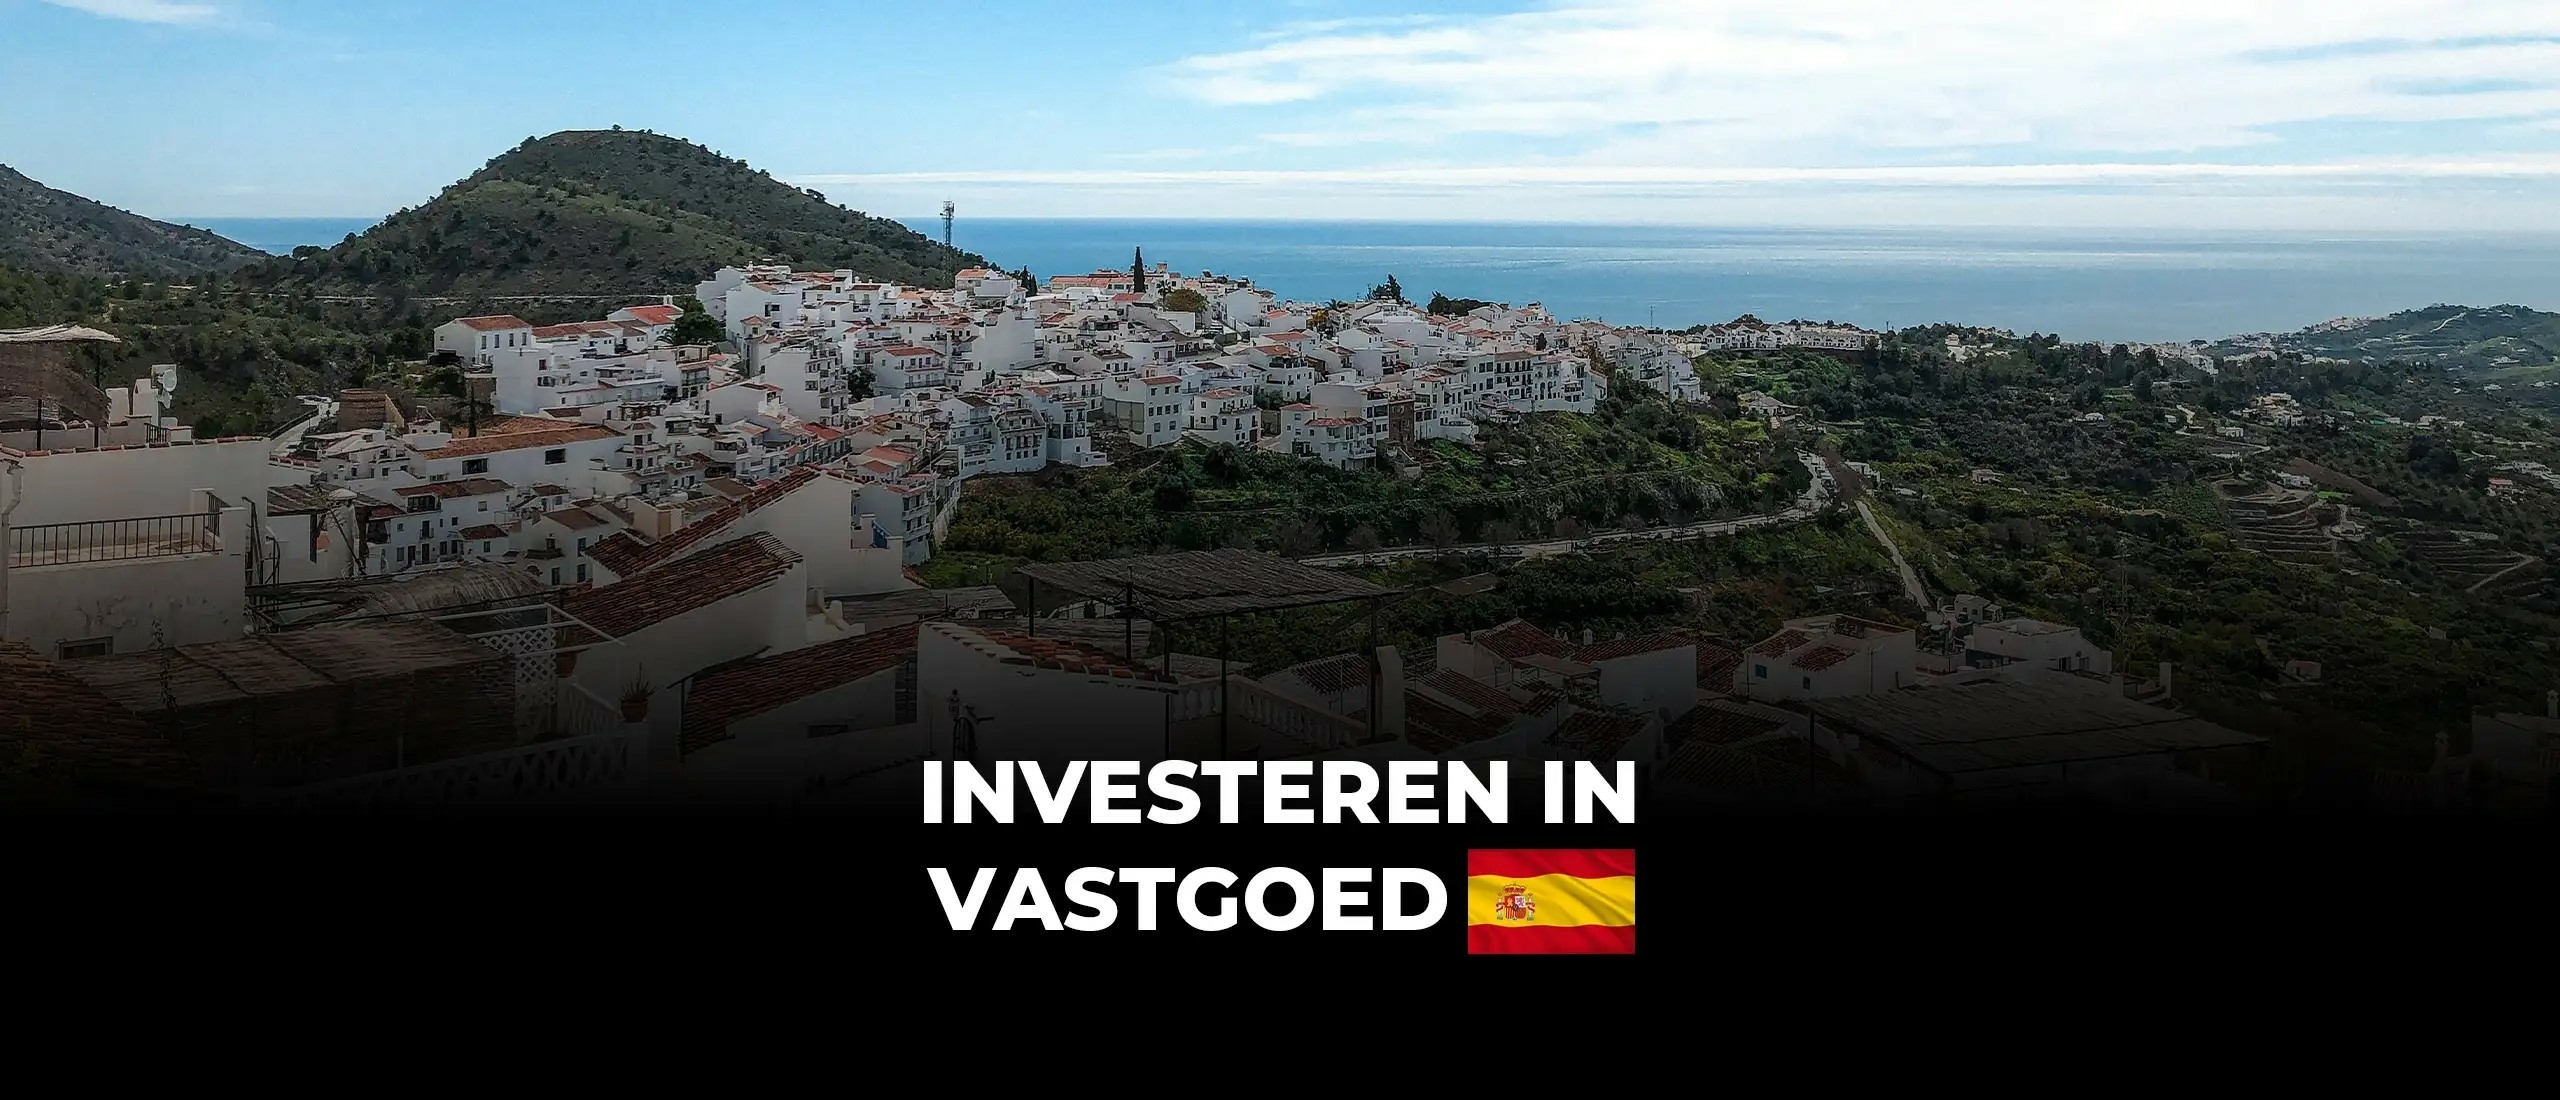 Investeren in vastgoed Spanje: alles over vastgoed in Spanje